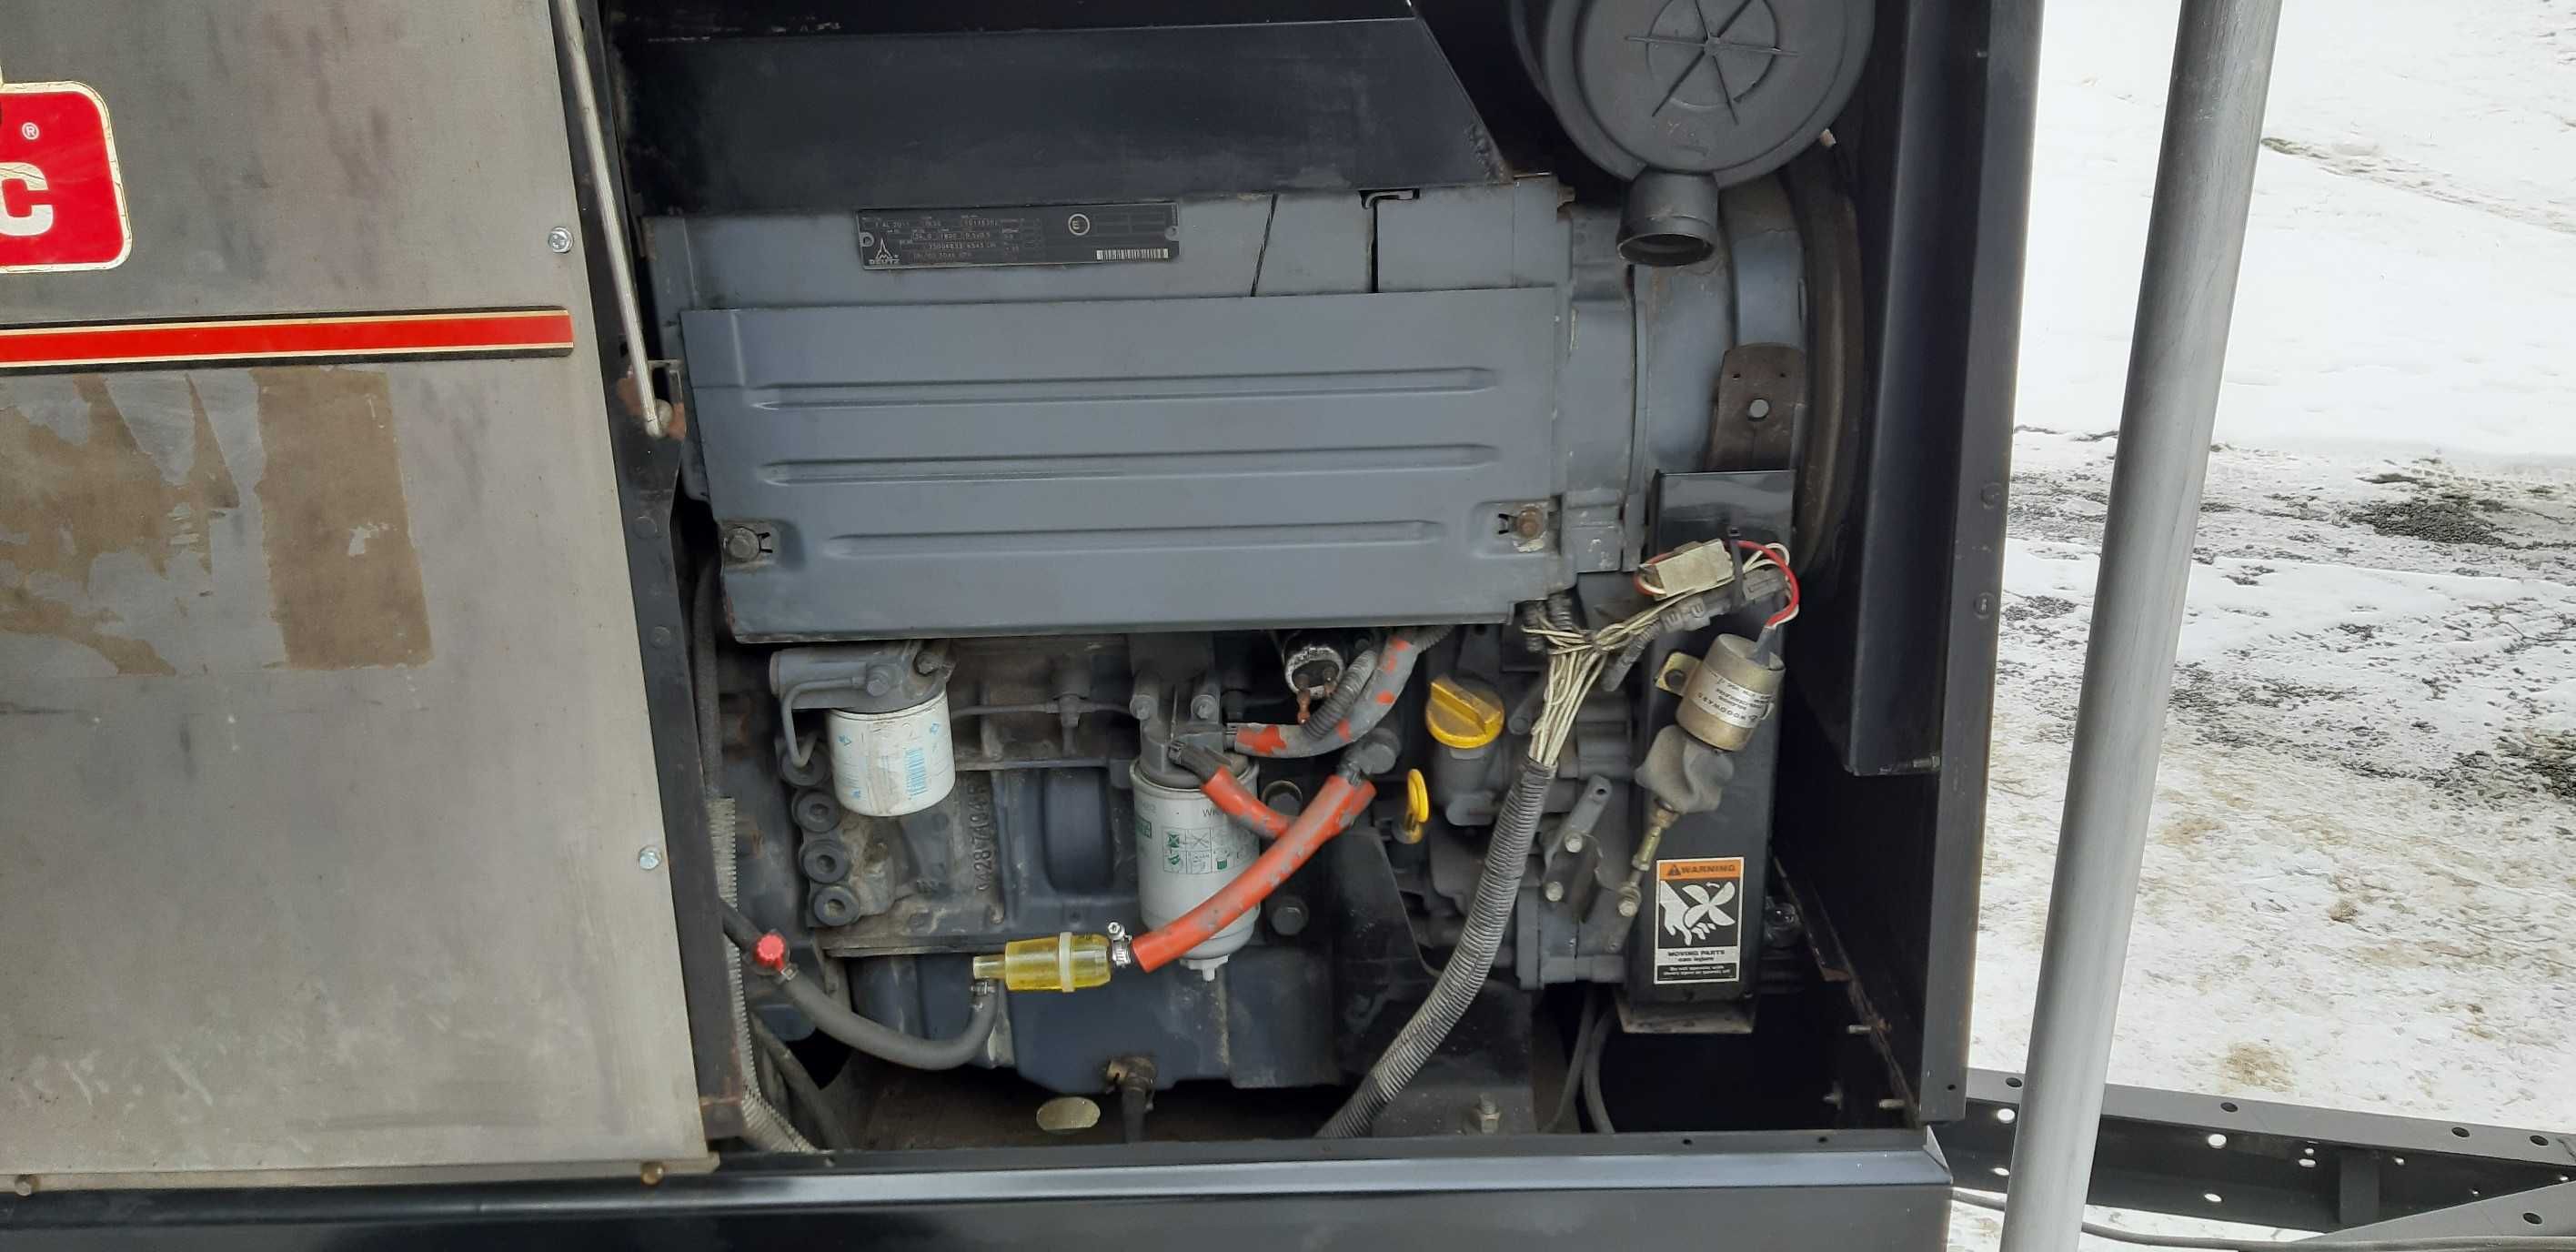 Spawarka agregat diesel Lincoln Vantage 500